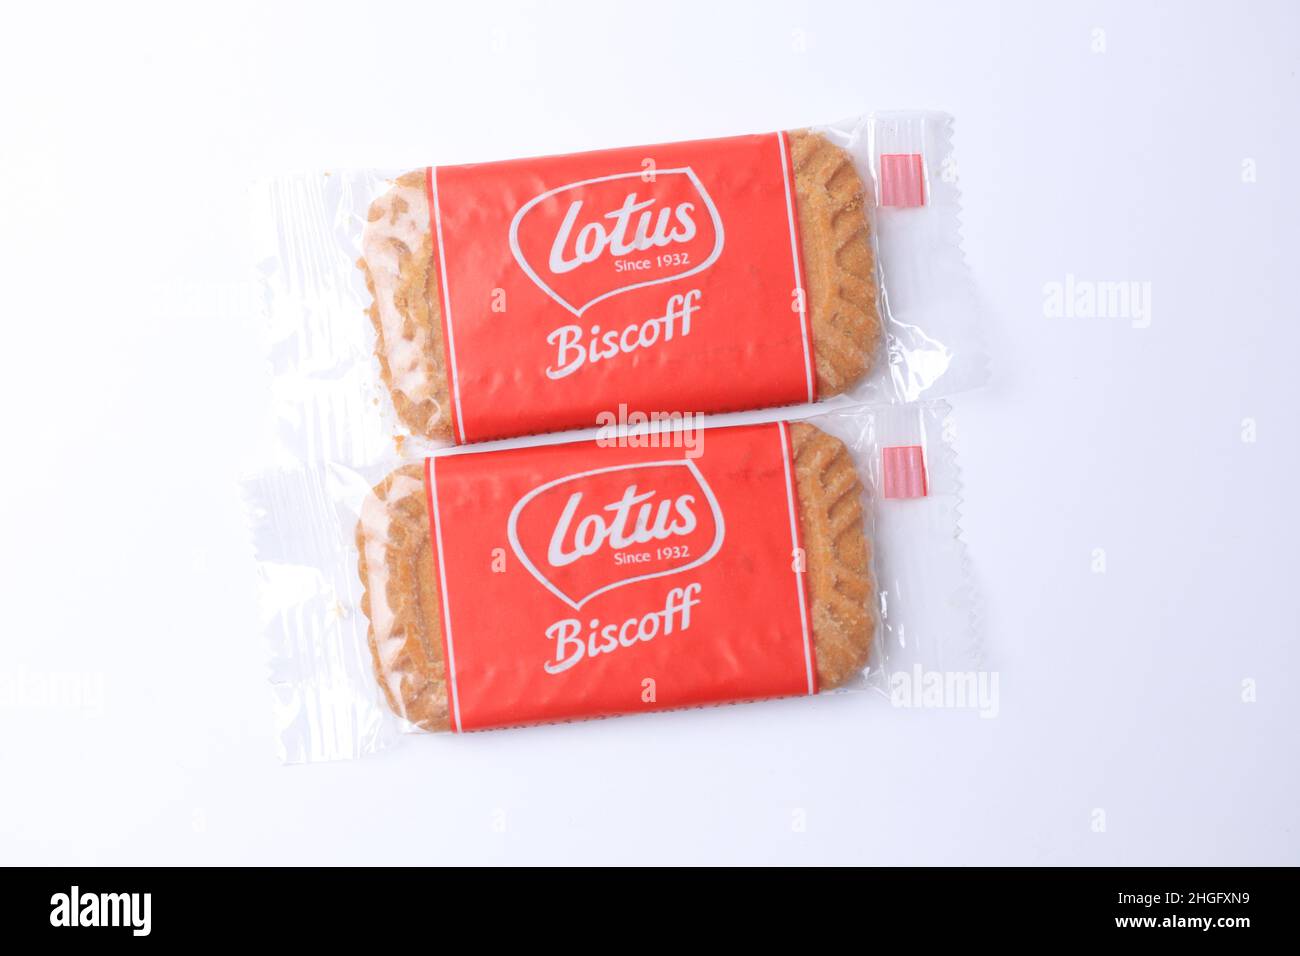 SIDOARJO - EAST JAVA, 16. Januar 2022: Lotus Biscoff ist ein karamellisierter Keks, glatte und knackige Texturen auf weißem Hintergrund. Speicherplatz kopieren. Stockfoto